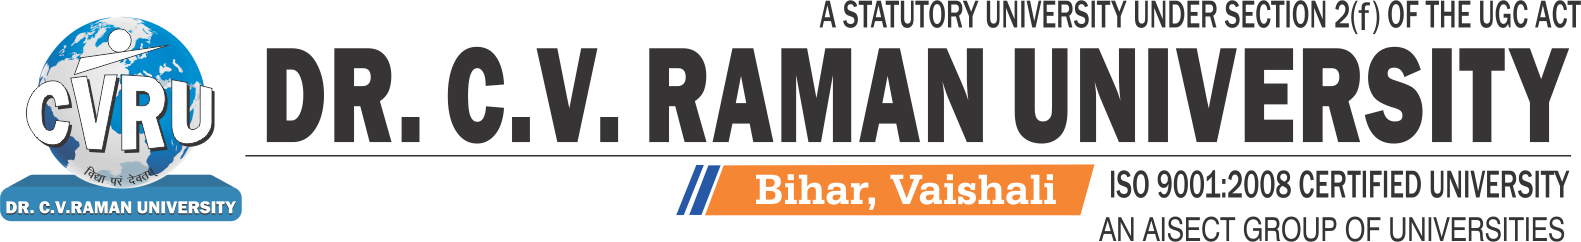 Dr C. V. Raman University- Bihar